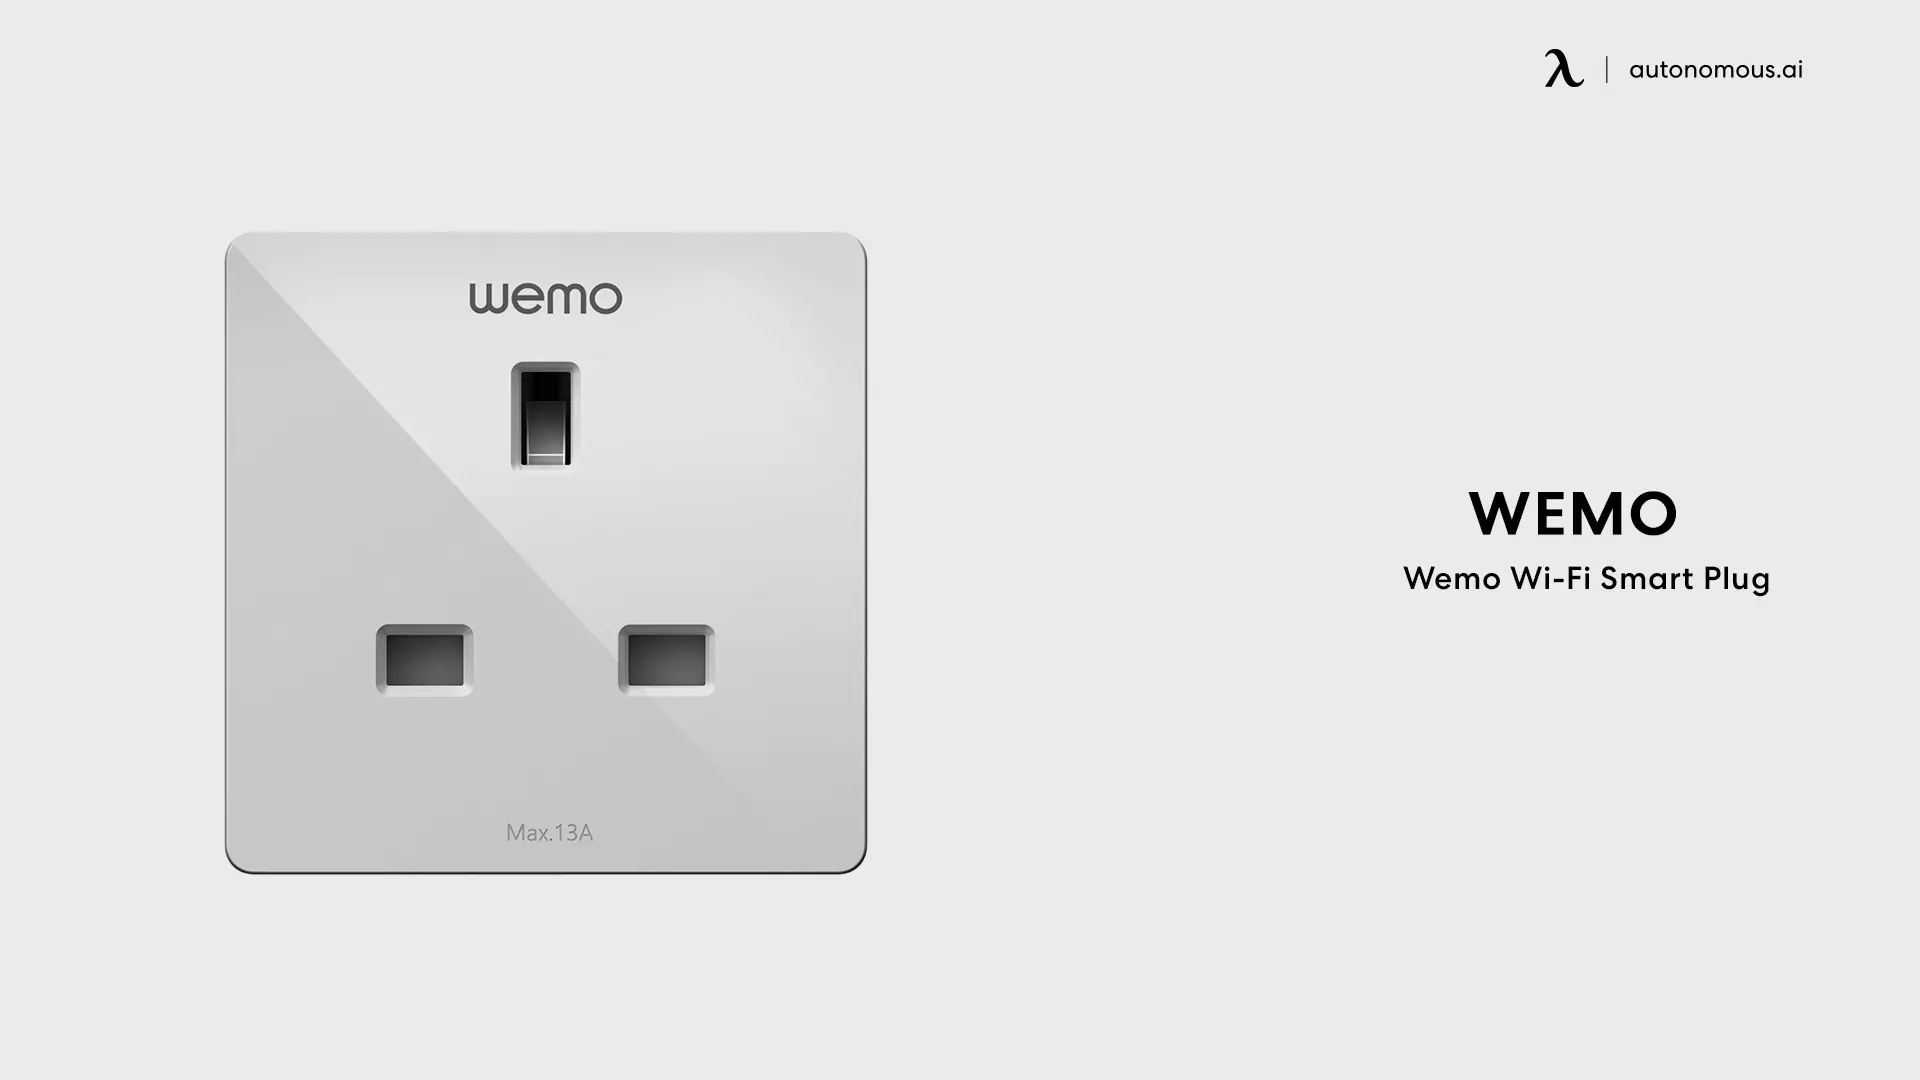 Wemo Wi-Fi Smart Plug